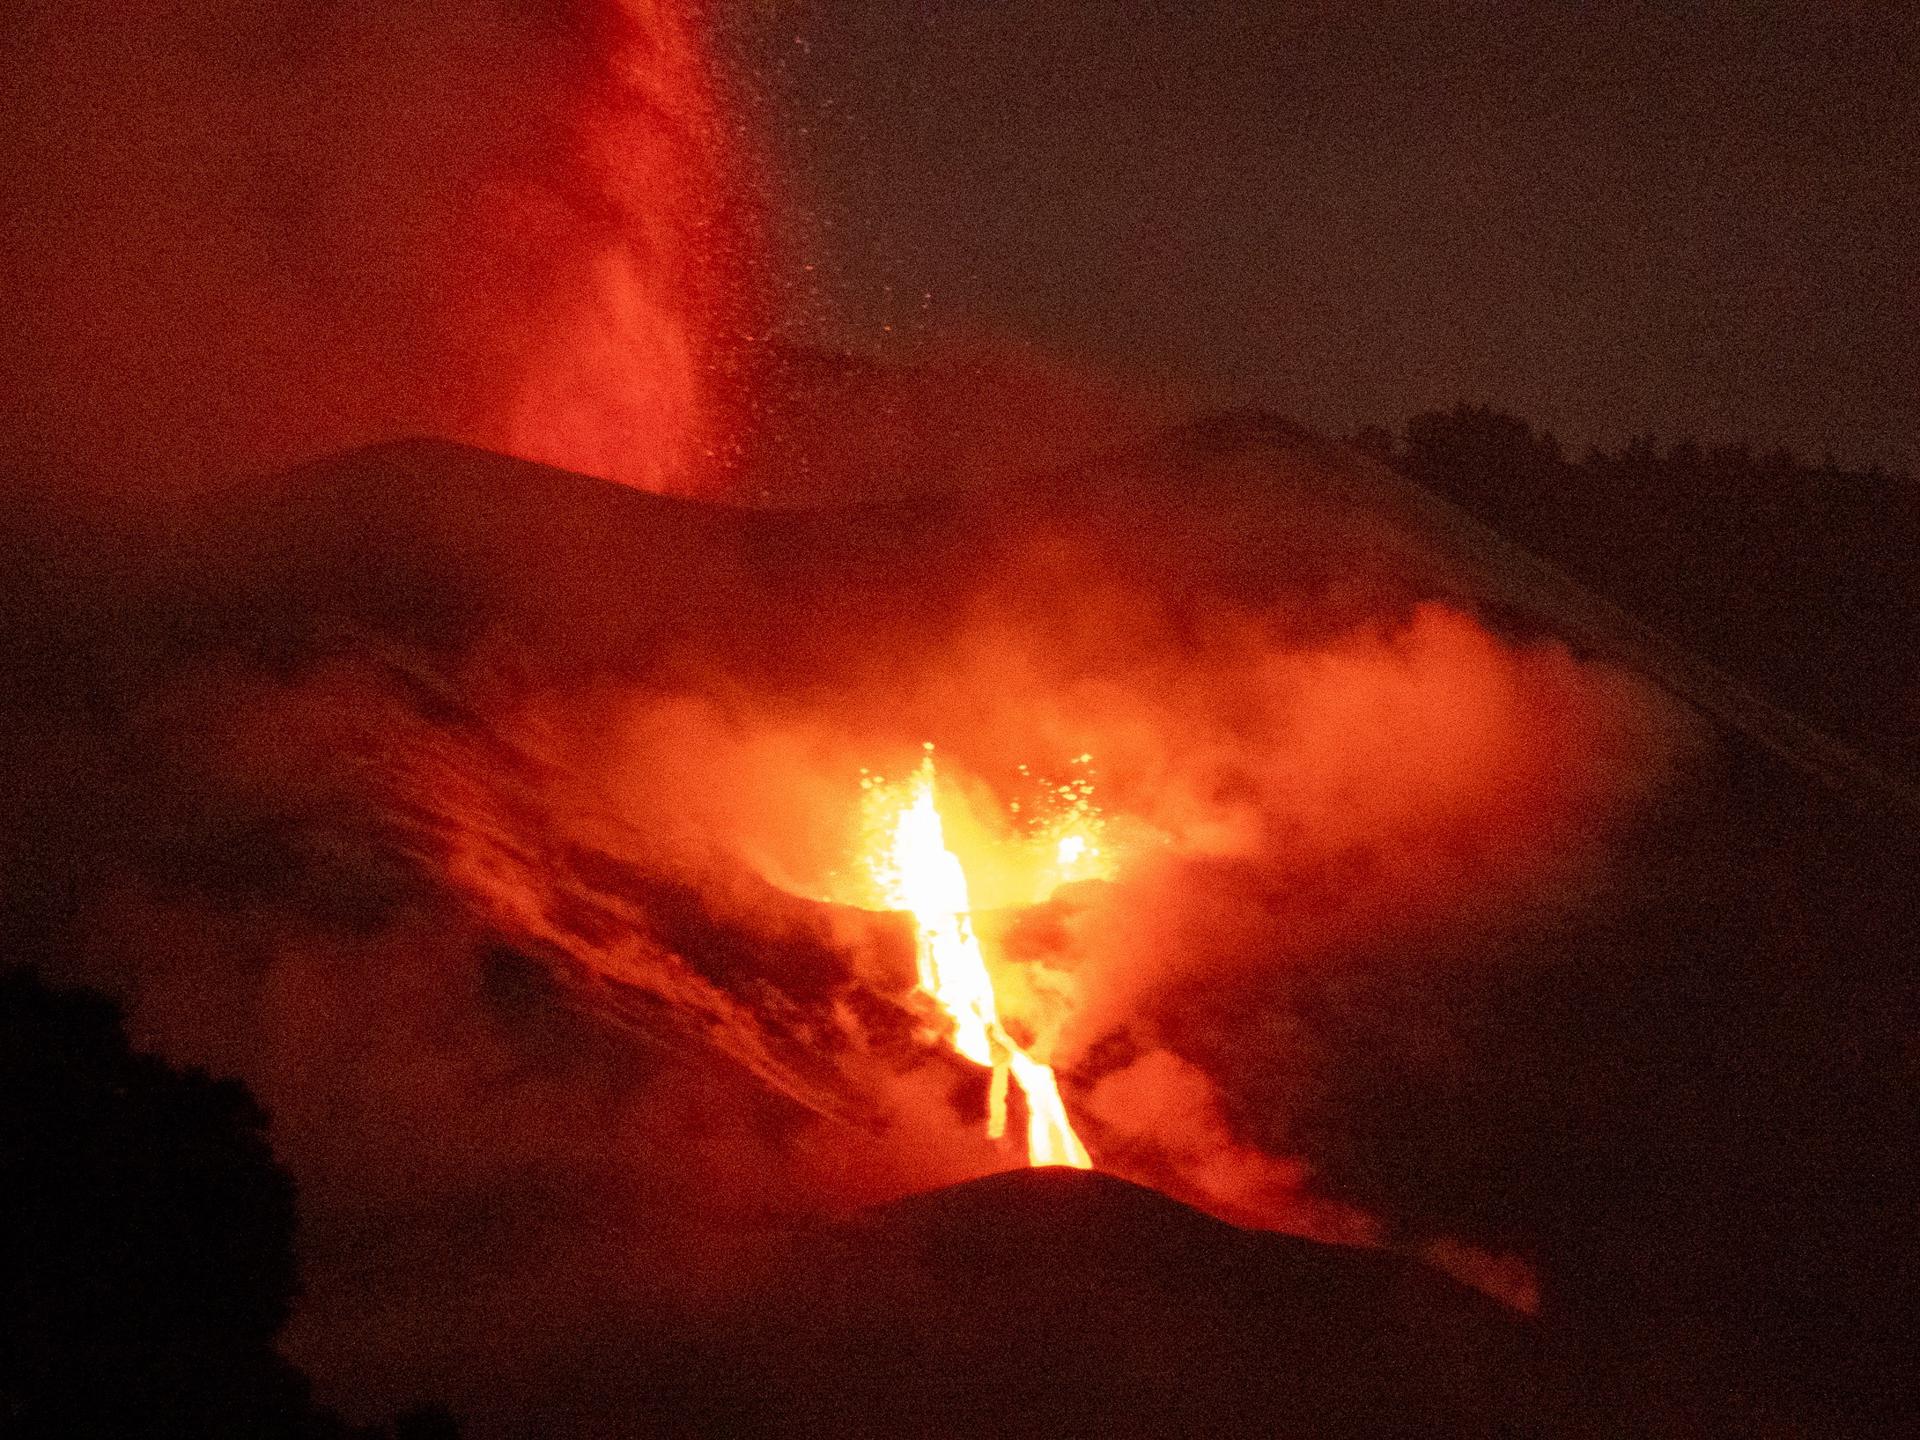 Imagen de la erupción en Cumbre Vieja, La Palma, tomada el 25 de noviembre de 2021. EFE/Miguel Calero